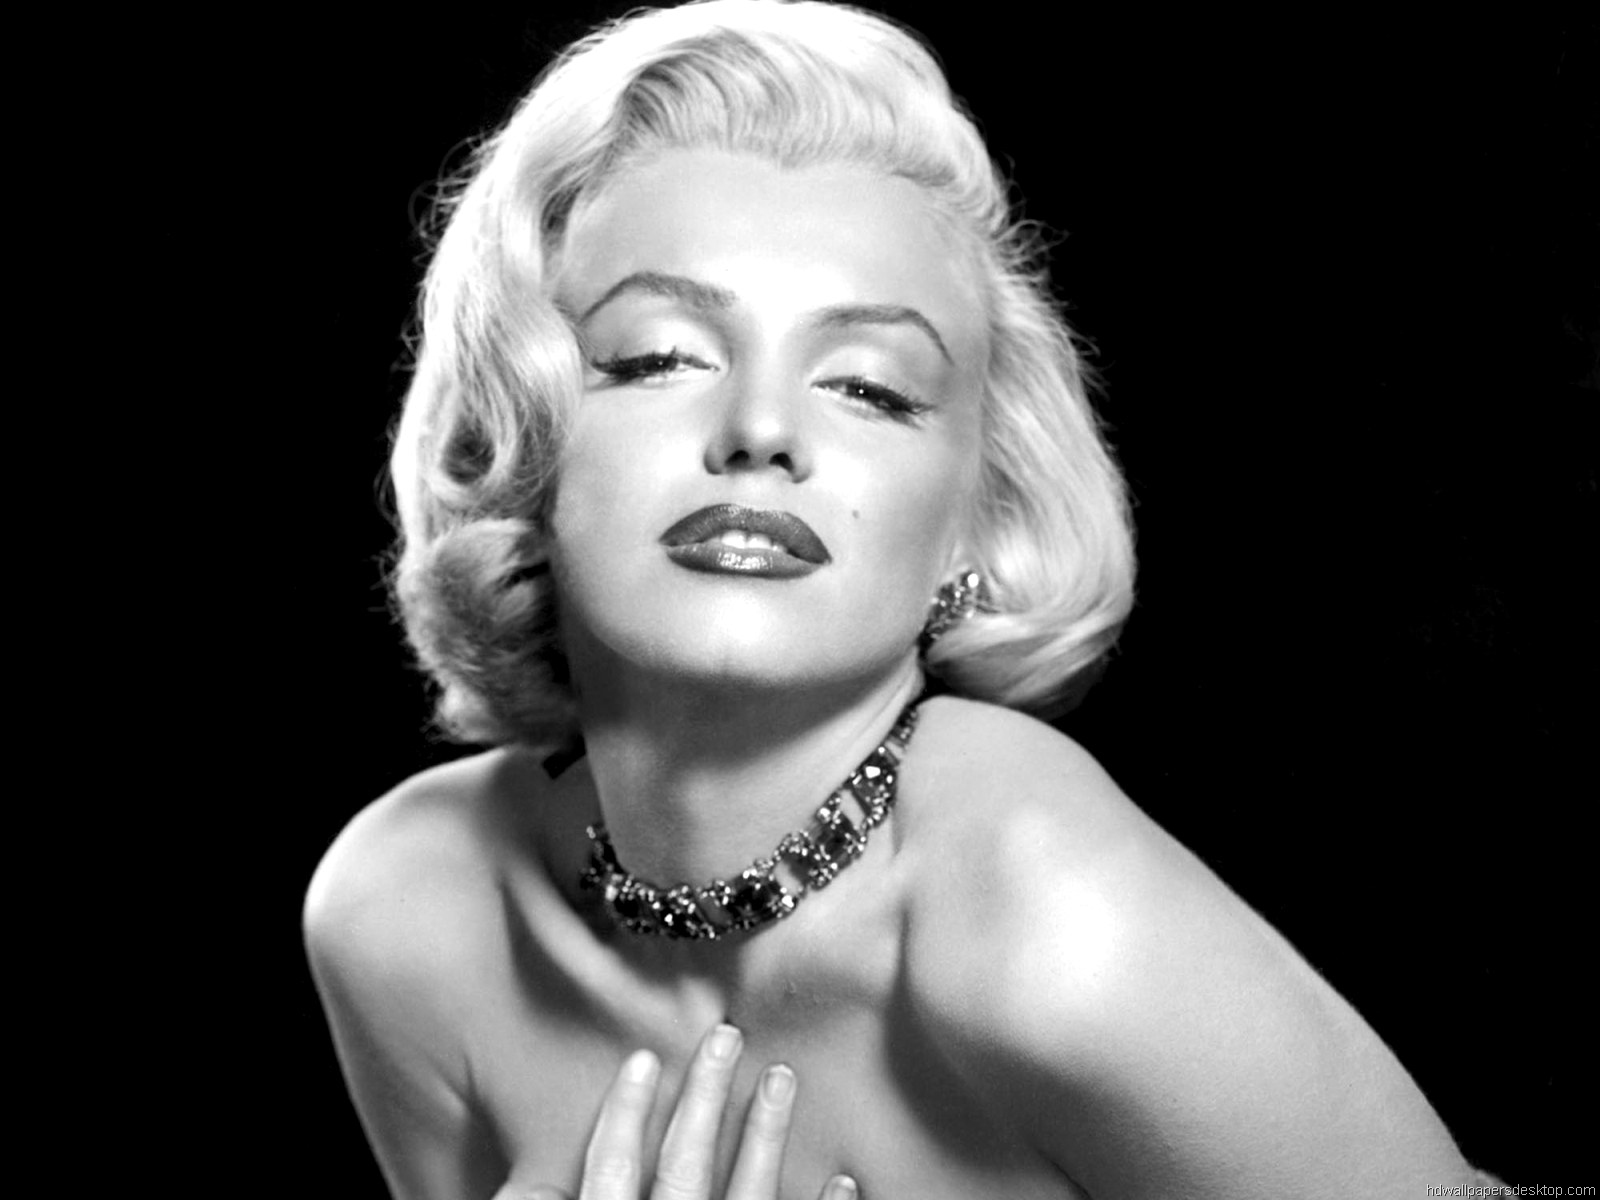 65ο Φεστιβάλ Καννών: αφιερωμένο στη μυθική Marilyn Monroe